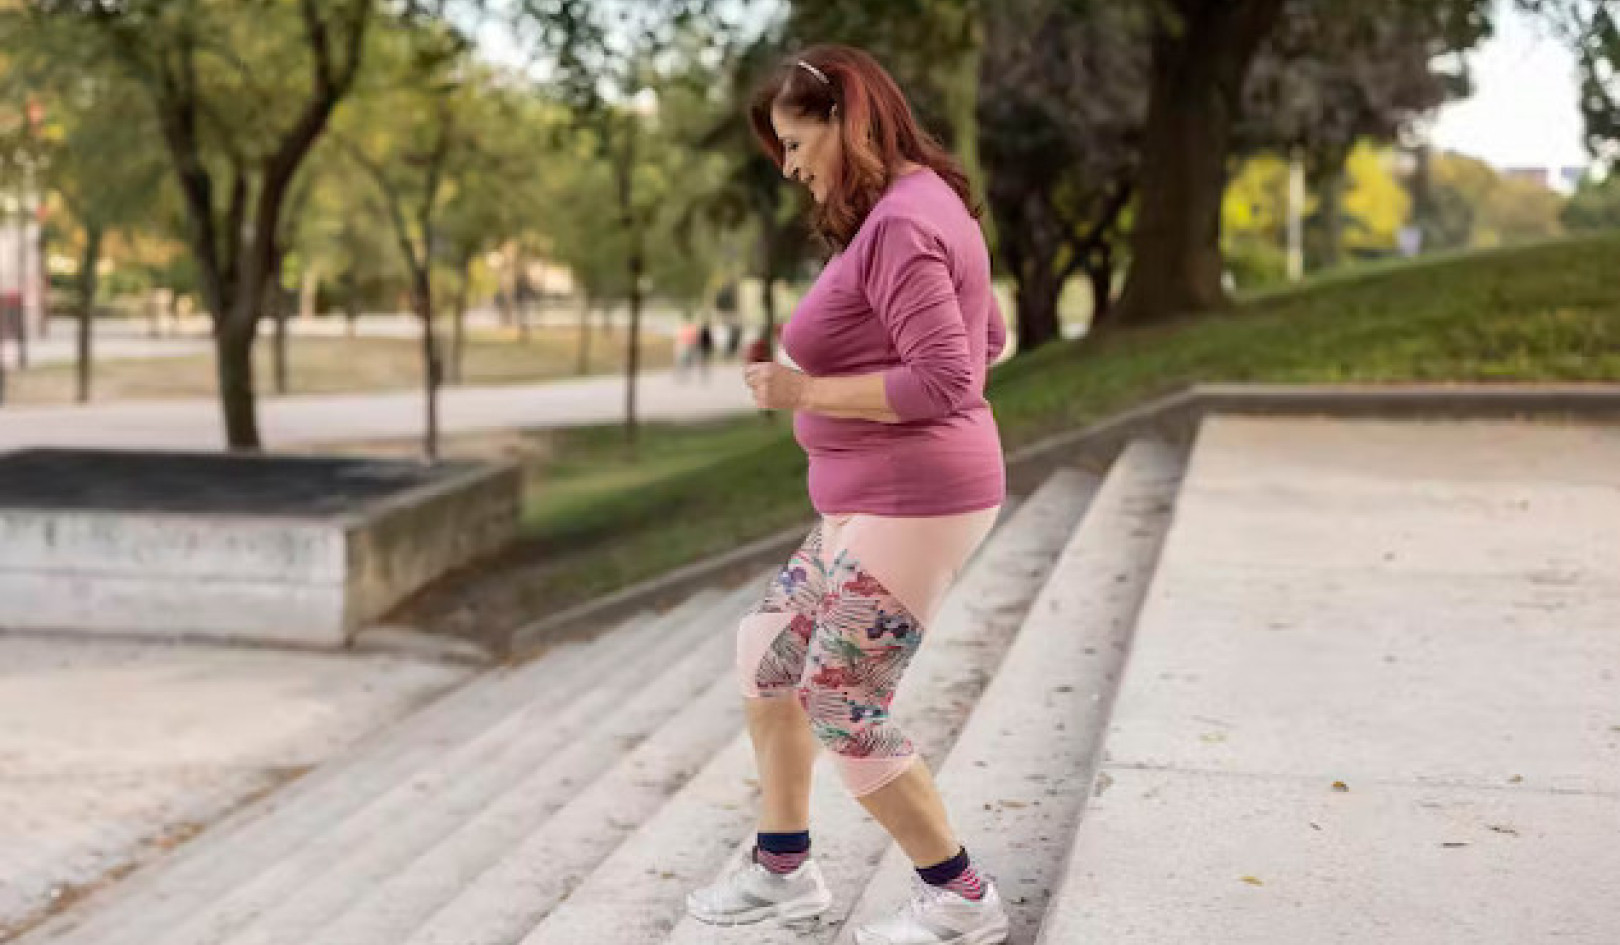 سر فقدان الوزن: هل كل ذلك في خطوات؟